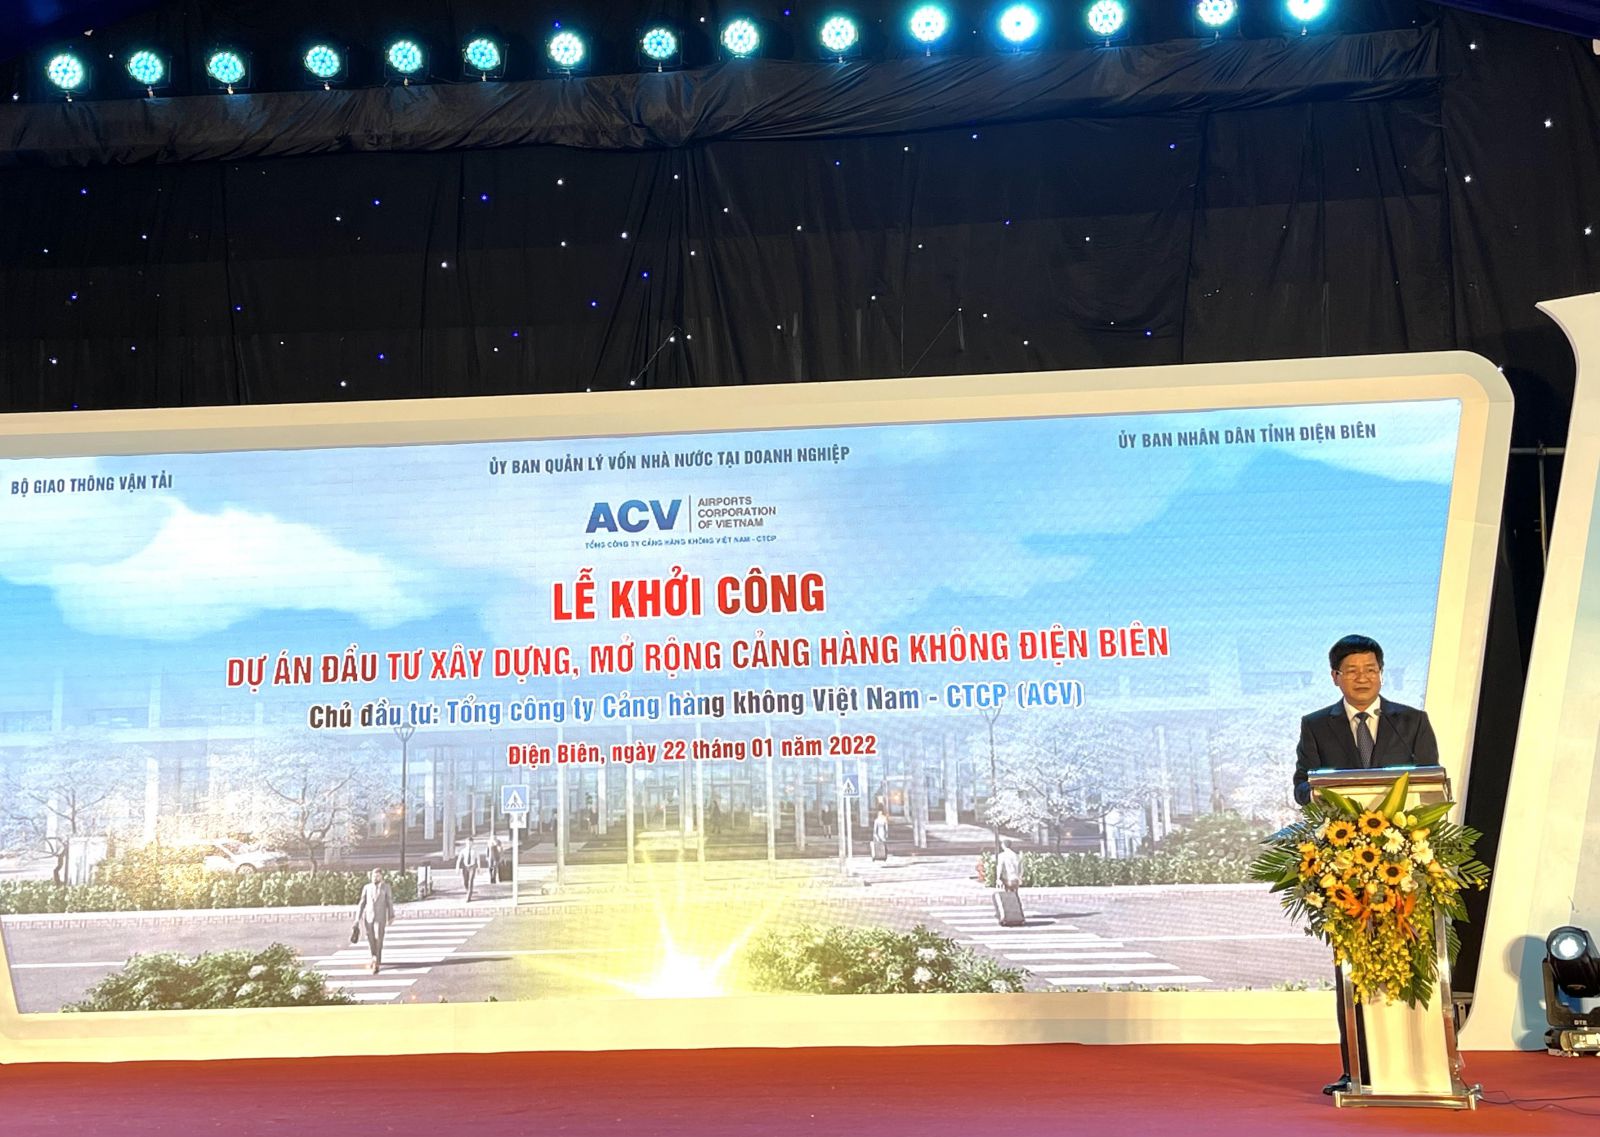 Ông Lê Thành Đô, Chủ tịch UBND tỉnh Điện Biên phát biểu tại Lễ Khởi công Dự án xây dựng mở rộng Cảng hàng không Điện Biên